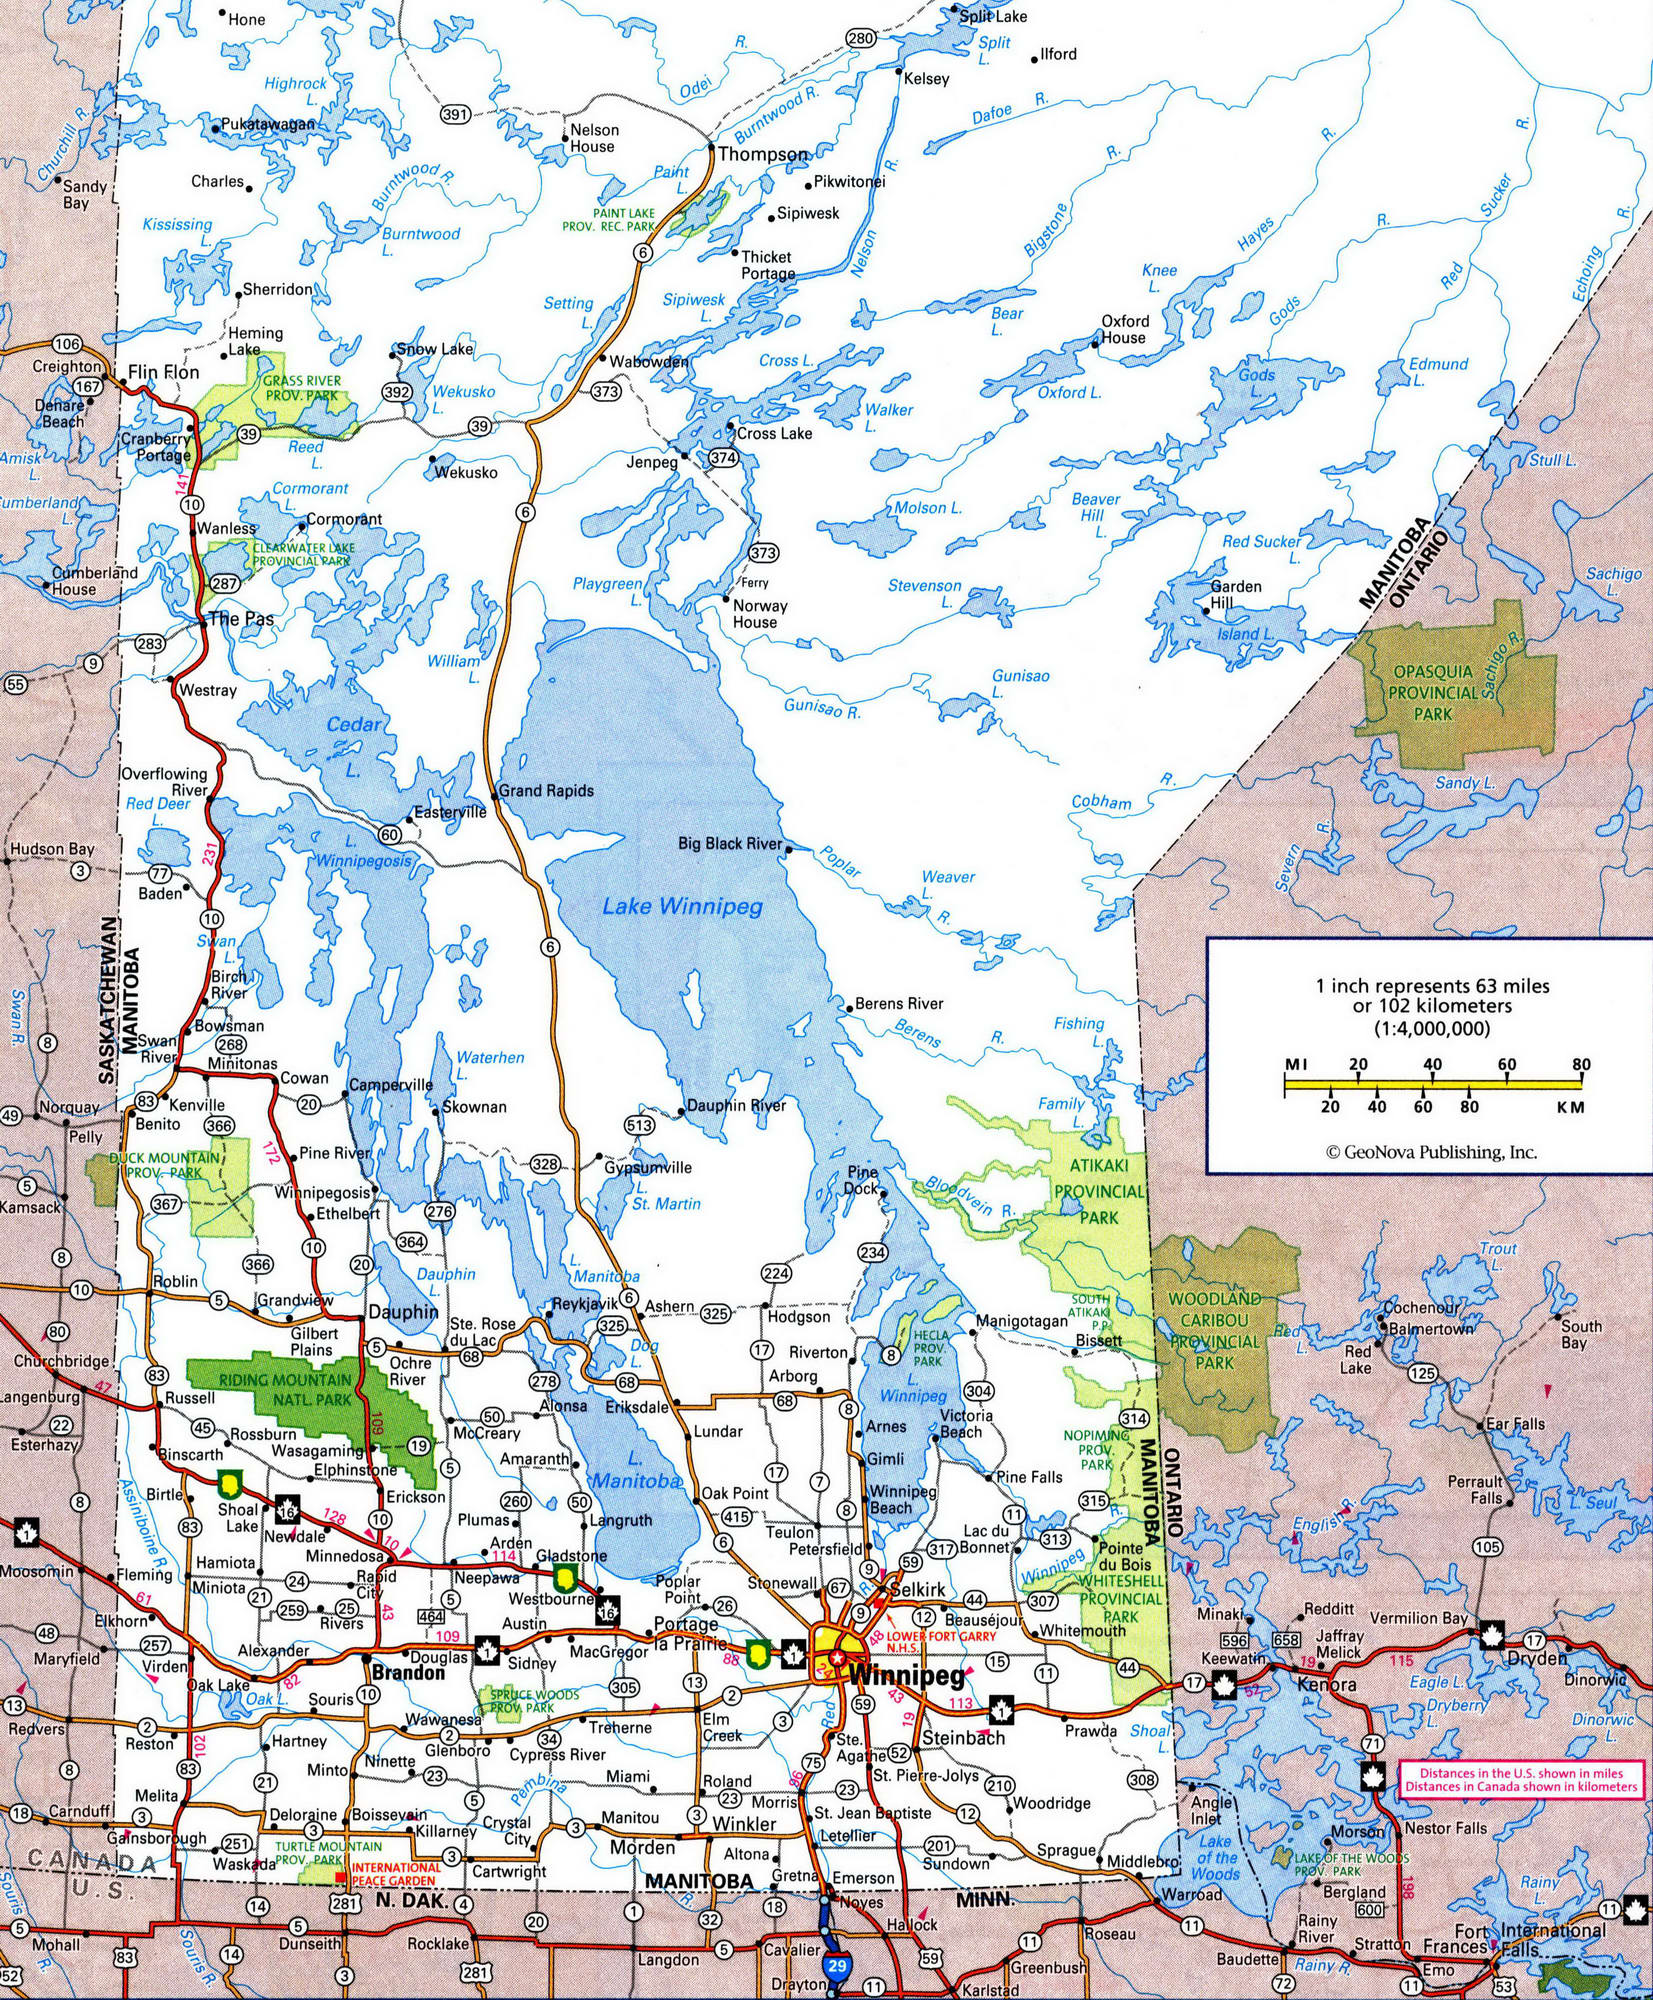 Detailed map of Manitoba